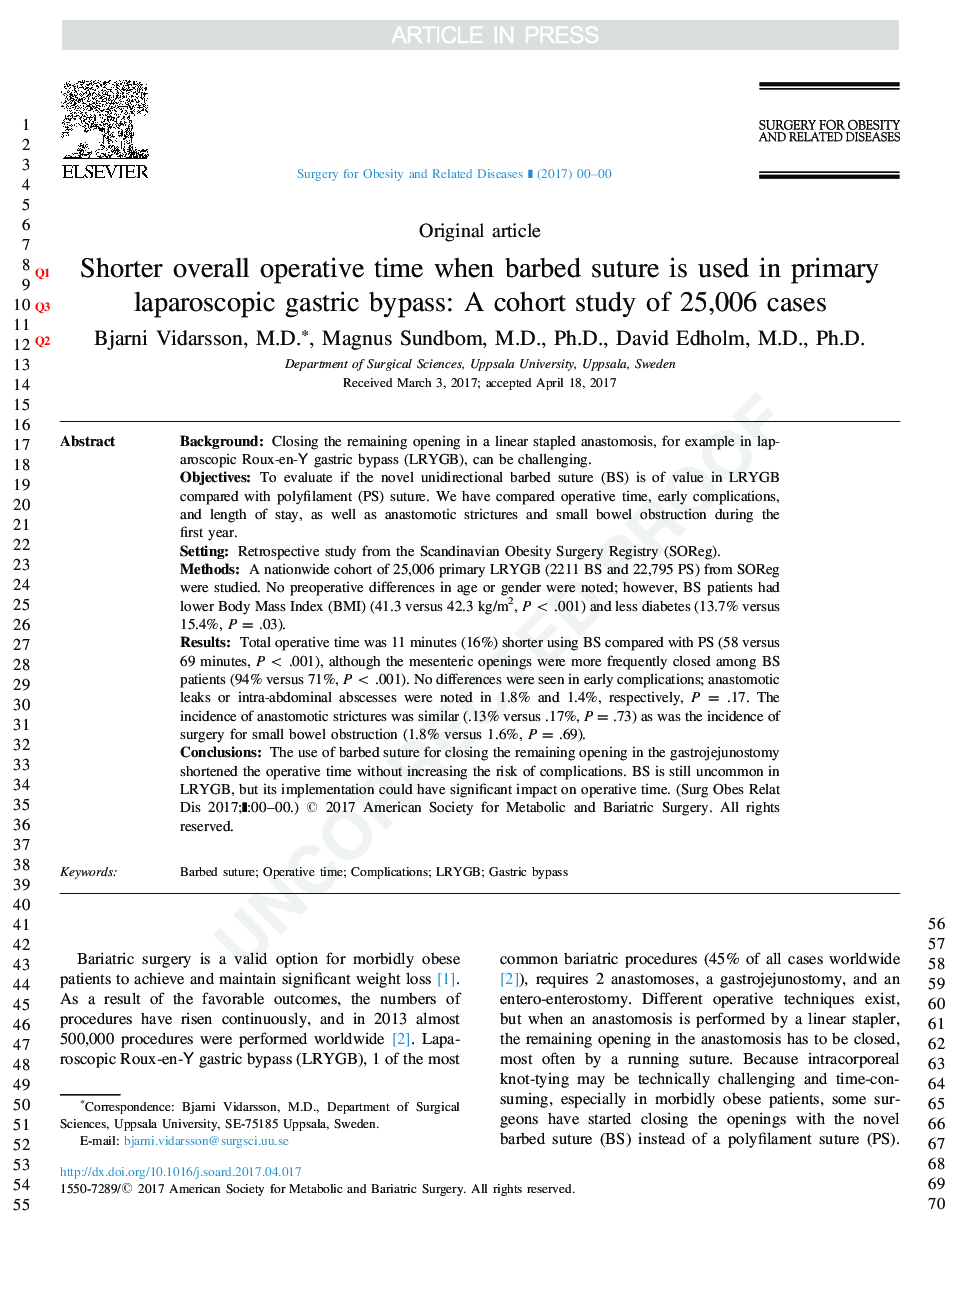 زمان کوتاهتر کارکردن زمانی که سوزن خاردار در بایپس اولیه لاپاروسکوپی مورد استفاده قرار میگیرد: یک مطالعه کوهورت از 25،006 مورد 